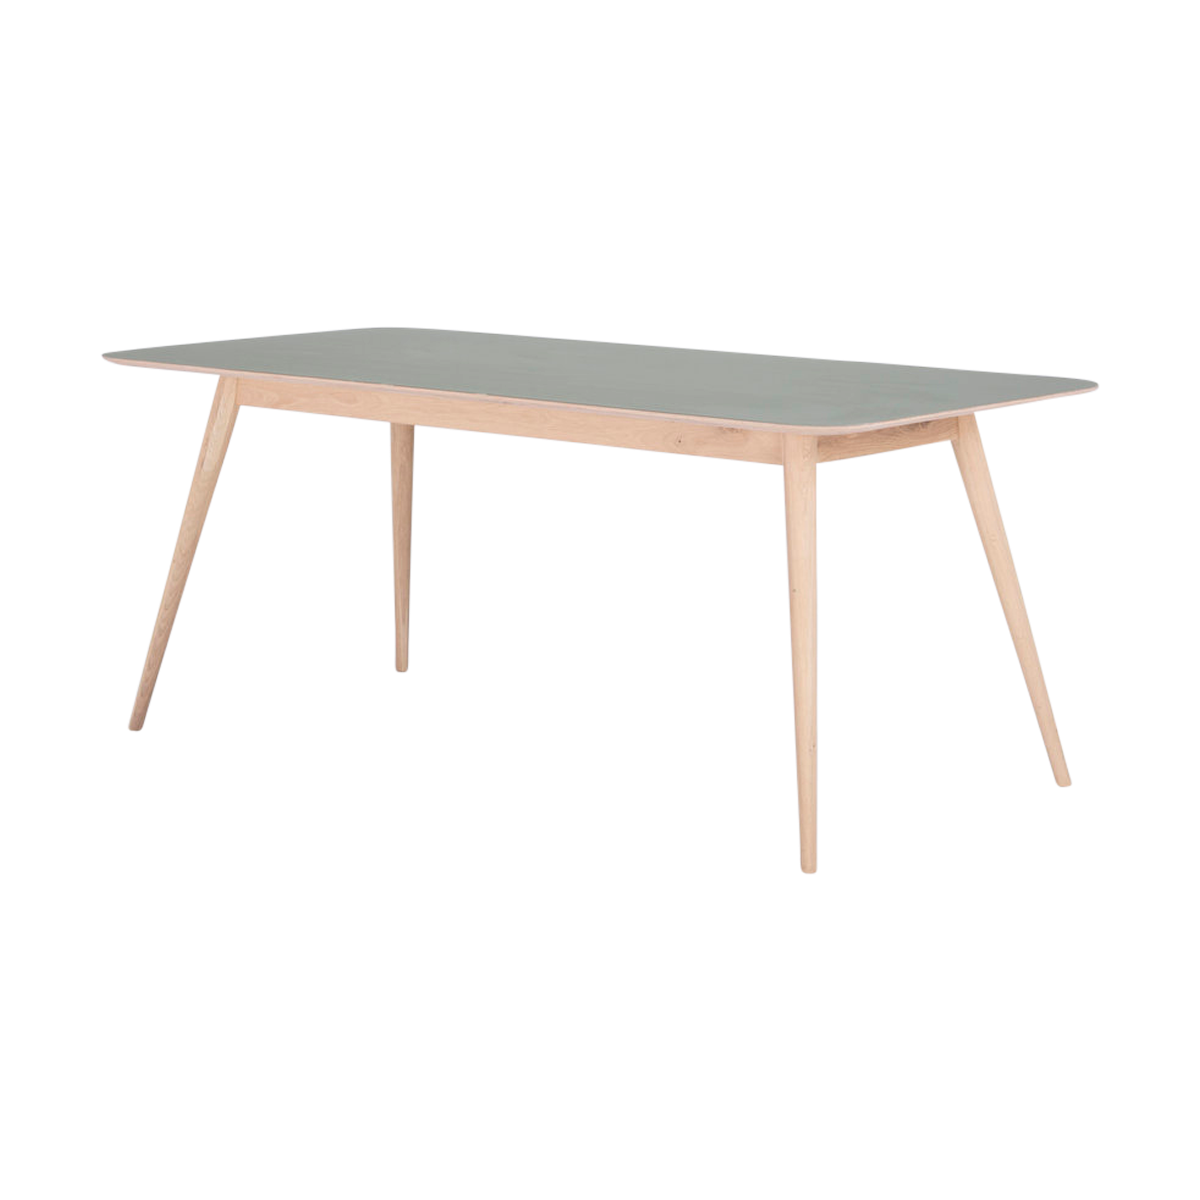 Verlichting Won Zorg Stafa table houten eettafel whitewash - met linoleum tafelblad dark olive -  220 x 90 cm | Gewoonstijl